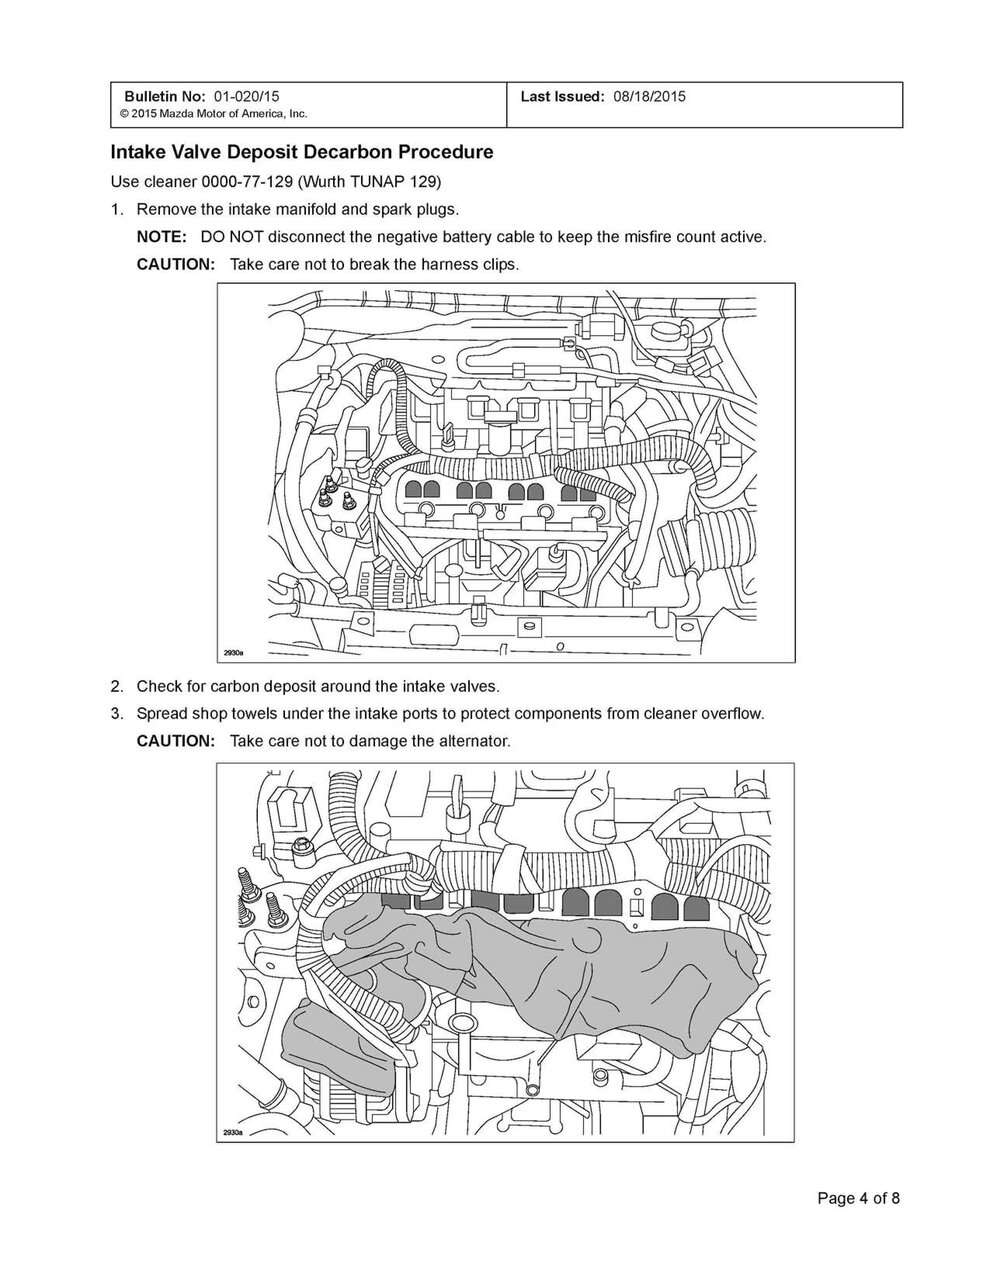 Intake valve cleaning | Mazdas247